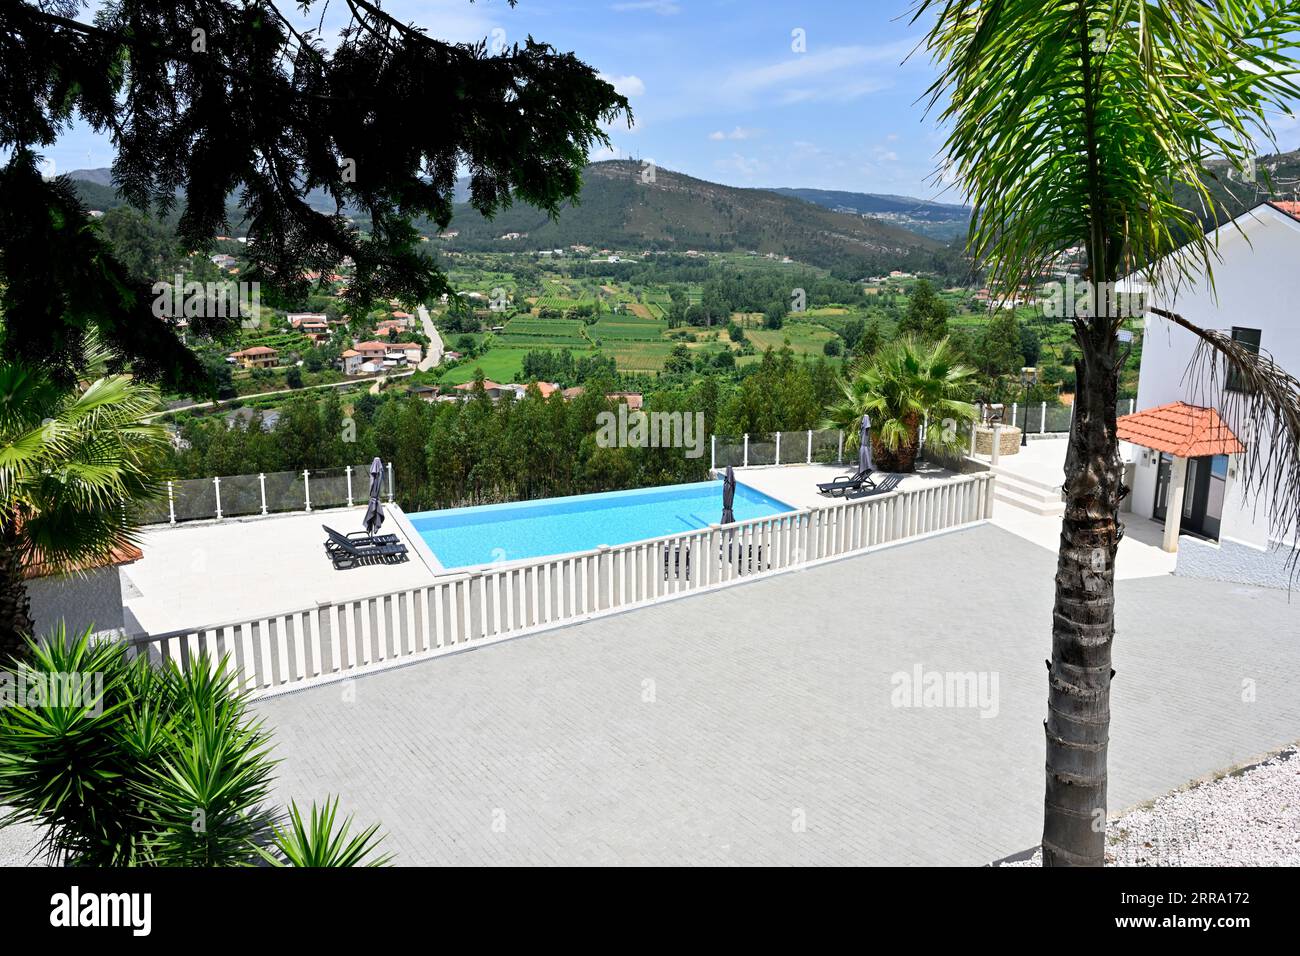 Maison d'hôtes Airbnb avec piscine à débordement, vue sur la campagne dans le nord du Portugal, quartier d'Aveiro Banque D'Images